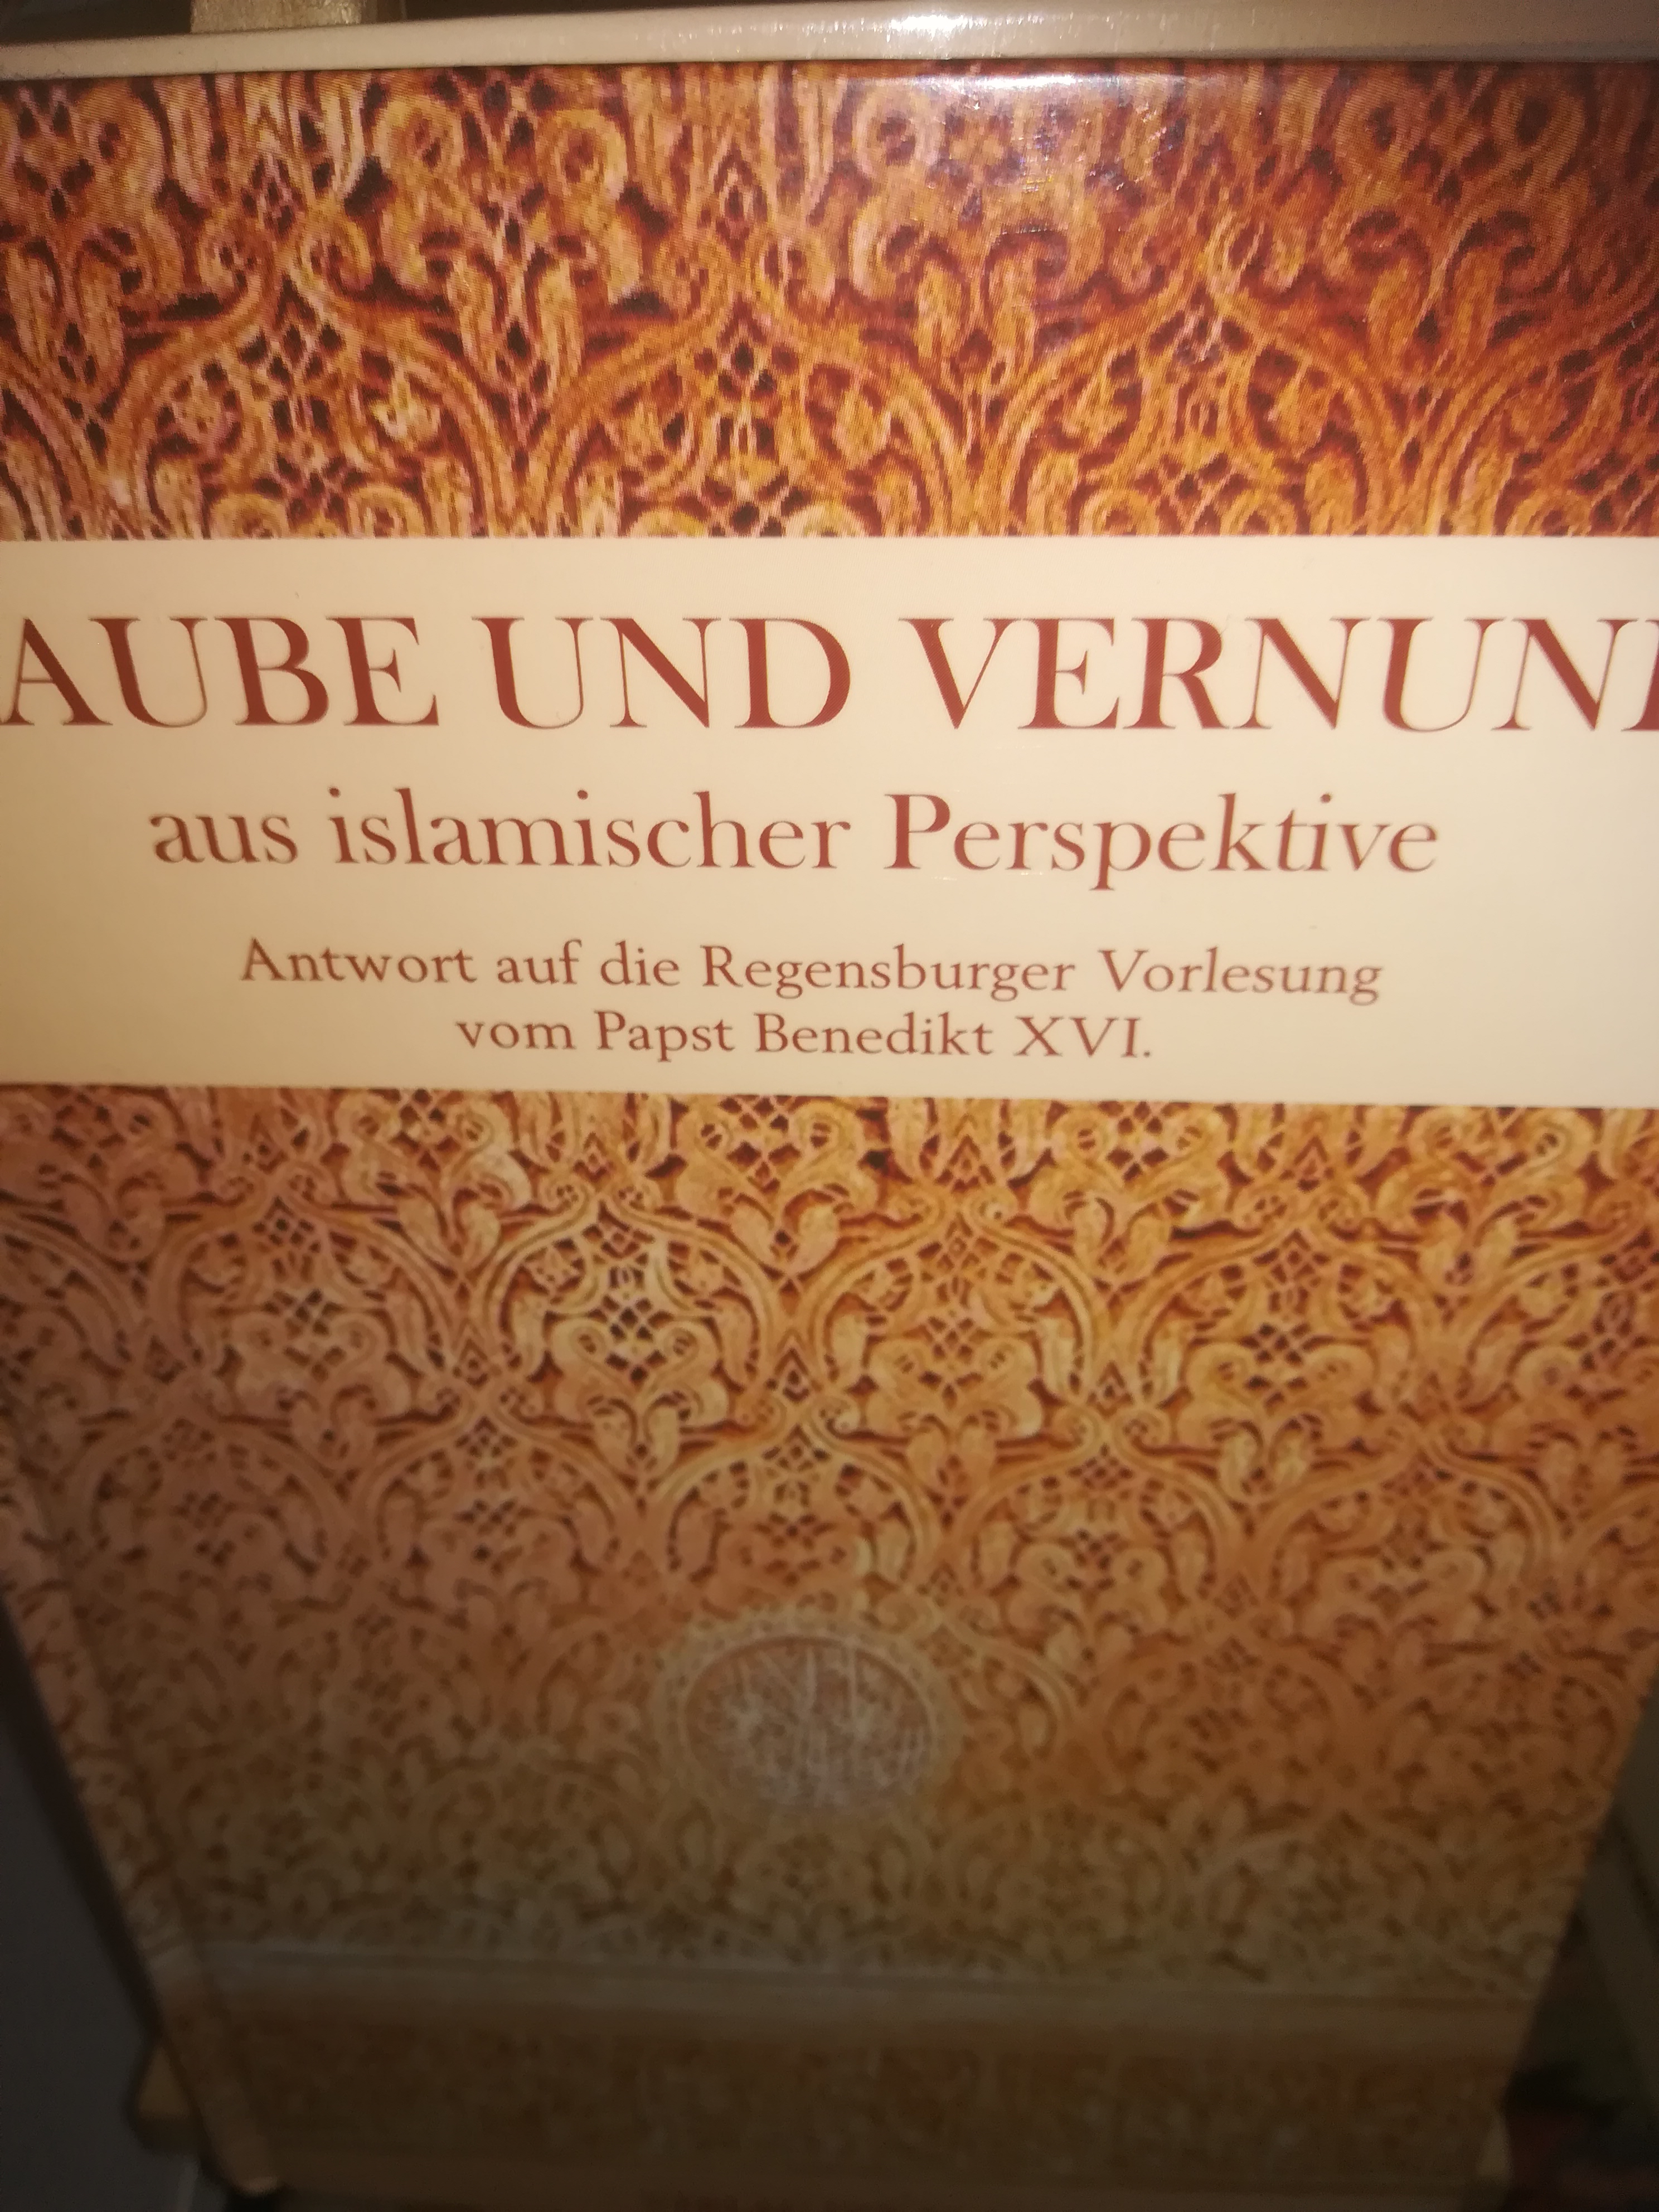 Glaube und Vernunft aus islamischer Perspektive, Antwort auf die Regensburger Vorlesung vom Papst Benedikt XVI - Zafar Haider Ali